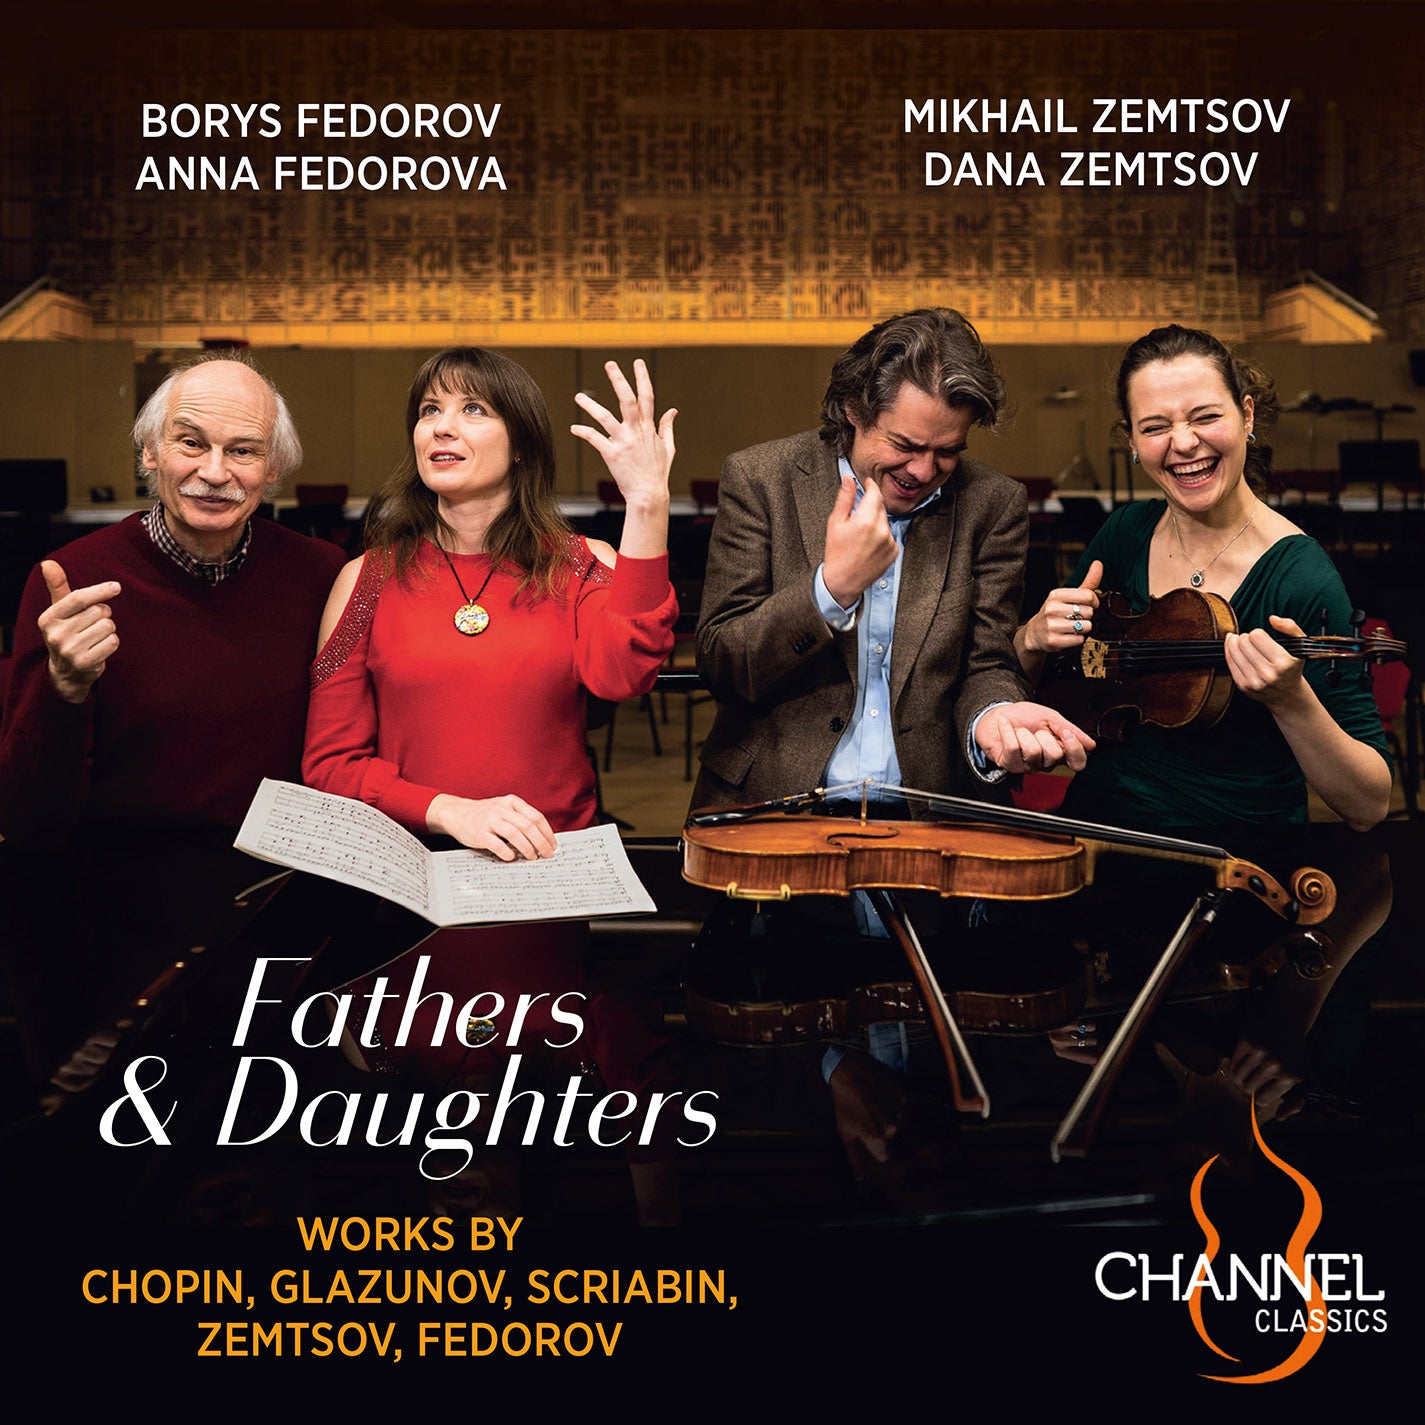 Fathers & Daughters  Borys Fedorov, Mikhail Zemtsov, Anna Fedorova, Dana Zemtsov, Nicholas Schwartz